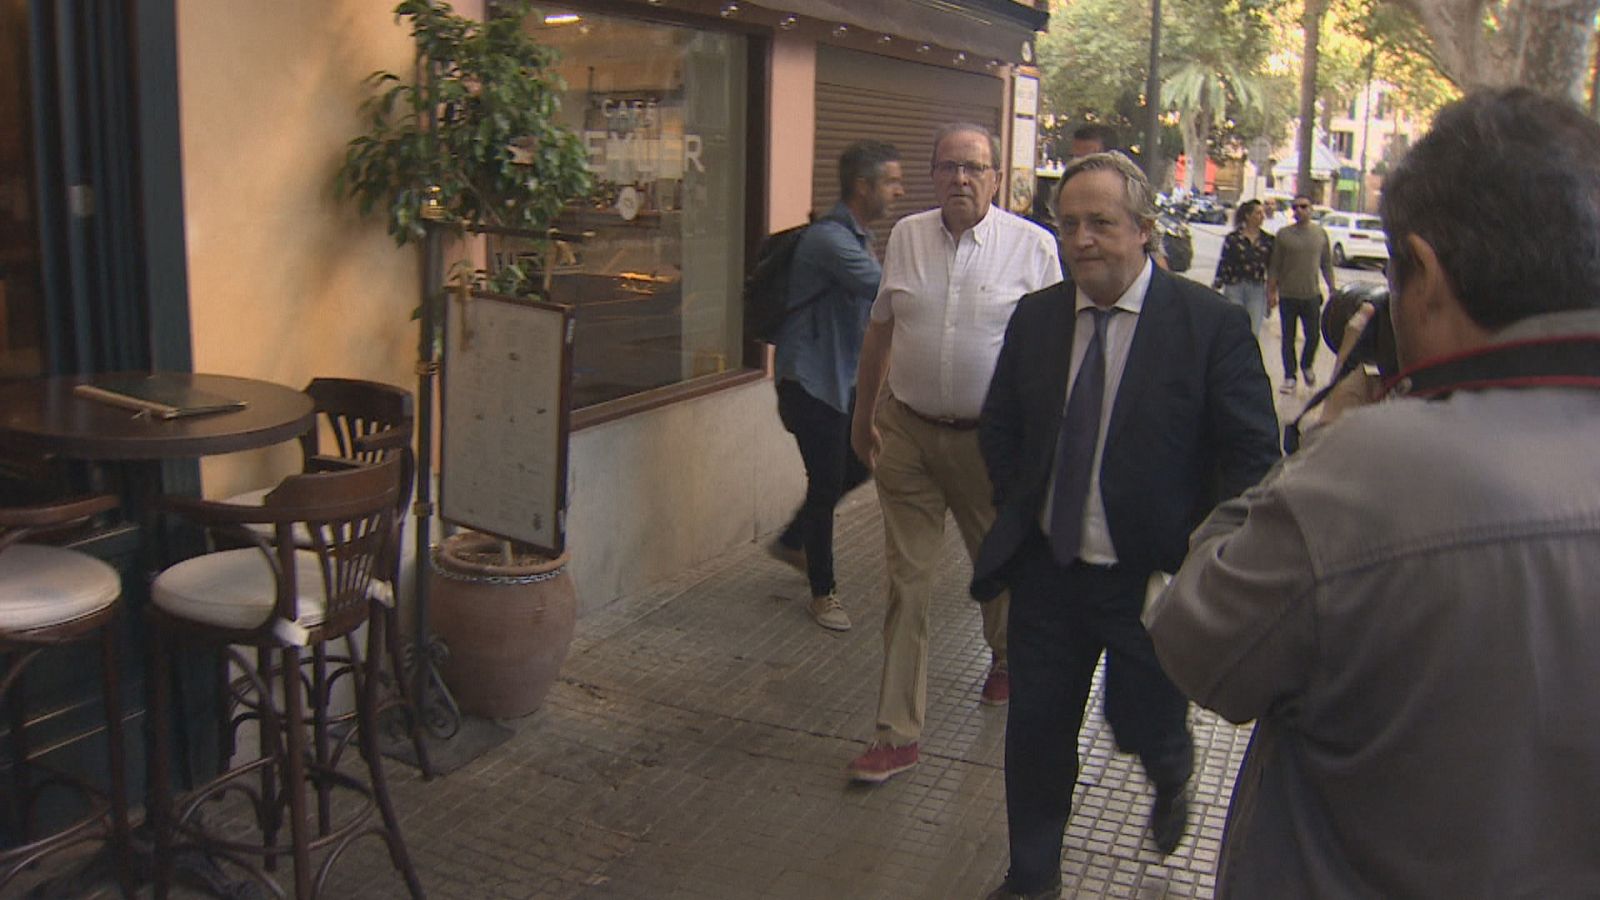 José María Rodríguez, acompanyat del seu advocat, en sortir de l'edifici judicial de la plaça del Mercat